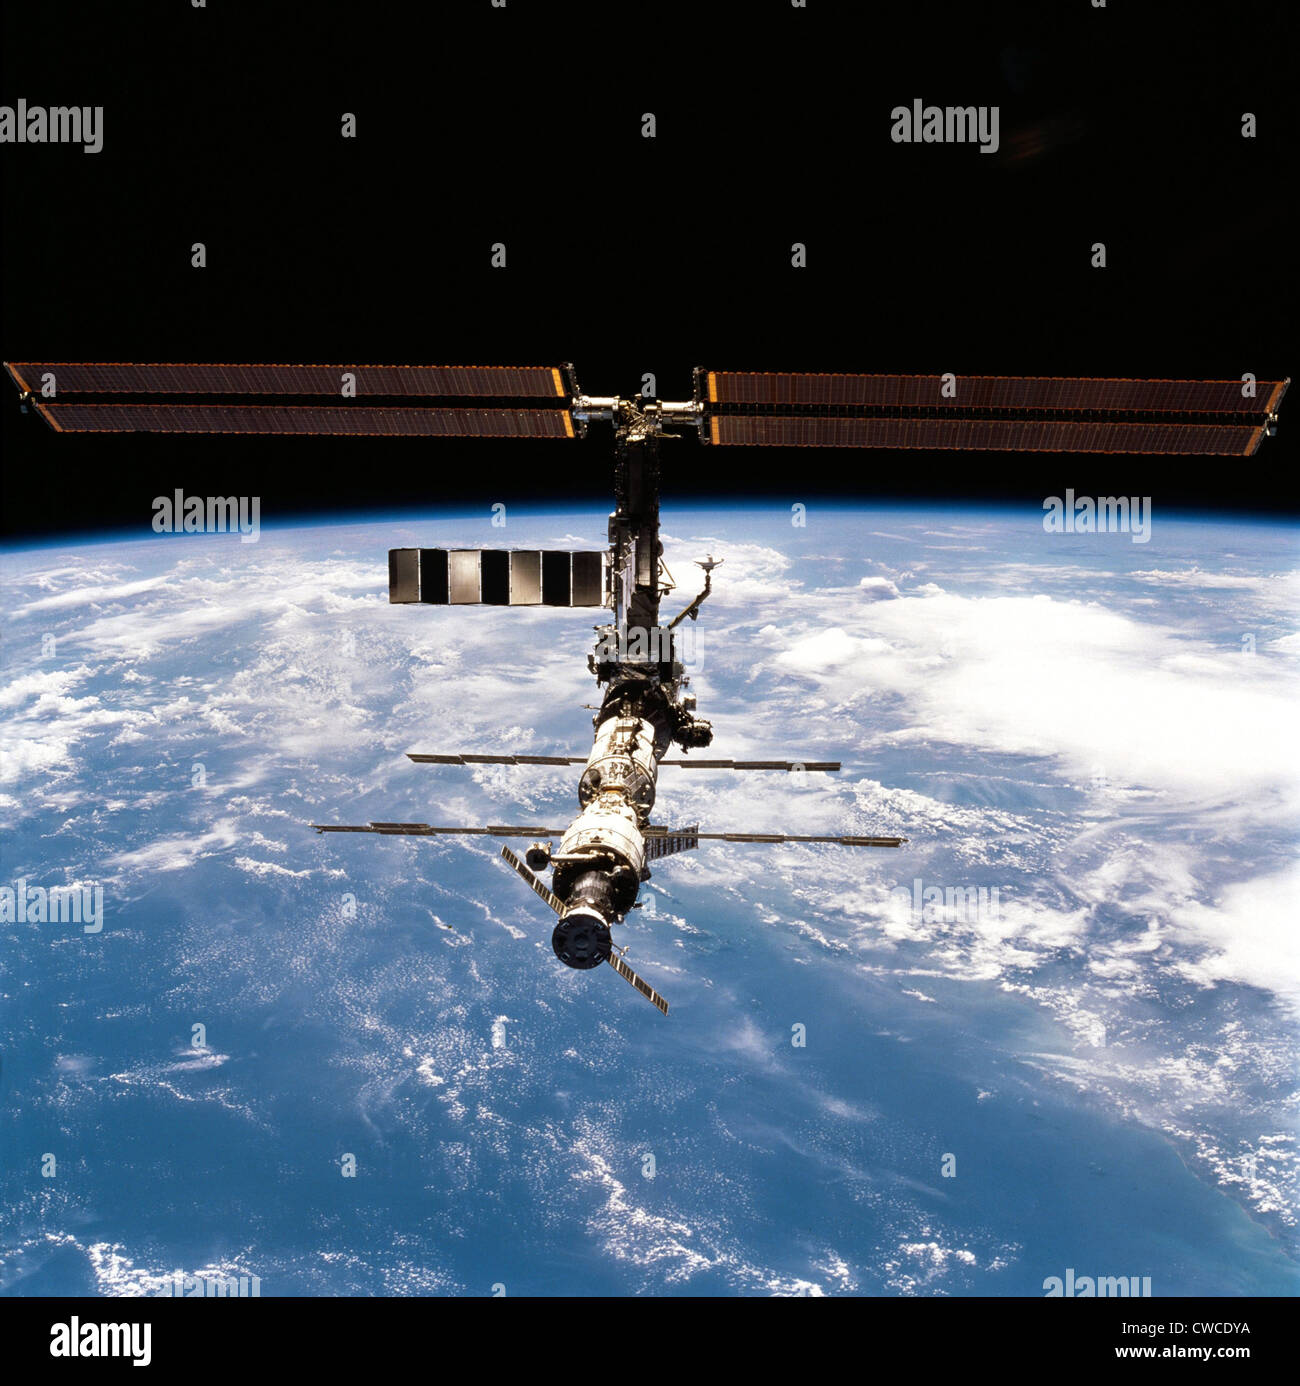 La Stazione Spaziale Internazionale nel 2001. Foto realizzate da lo Space Shuttle Discovery dopo la missione congiunta e un equipaggio di exchange. Foto Stock